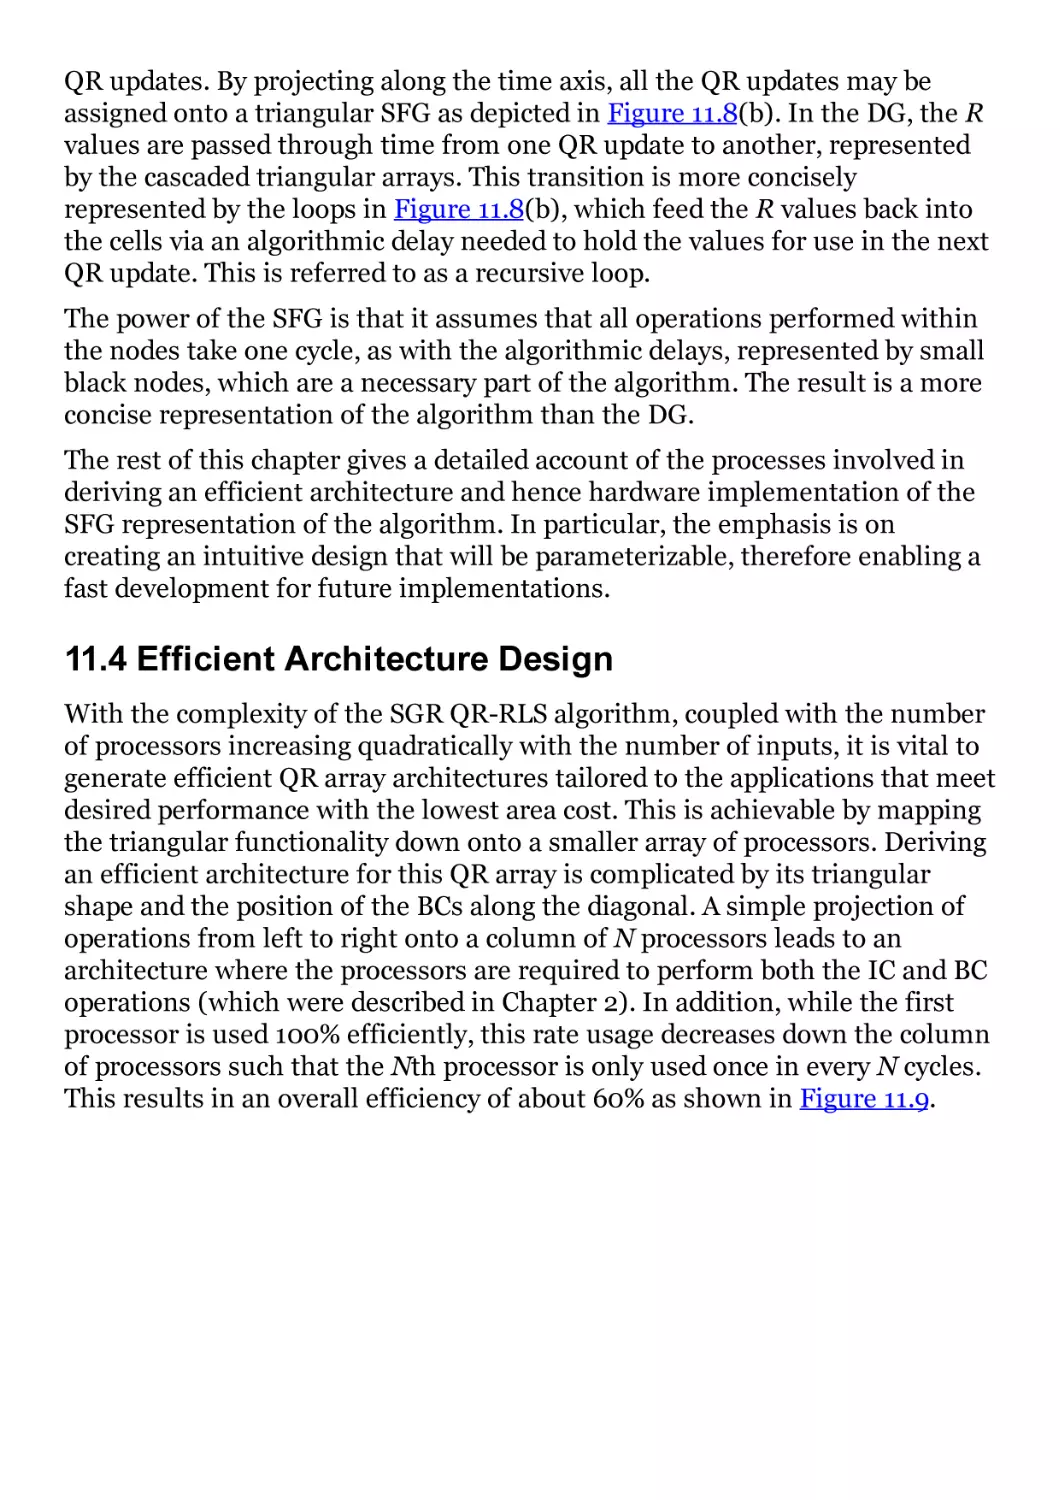 11.4 Efficient Architecture Design